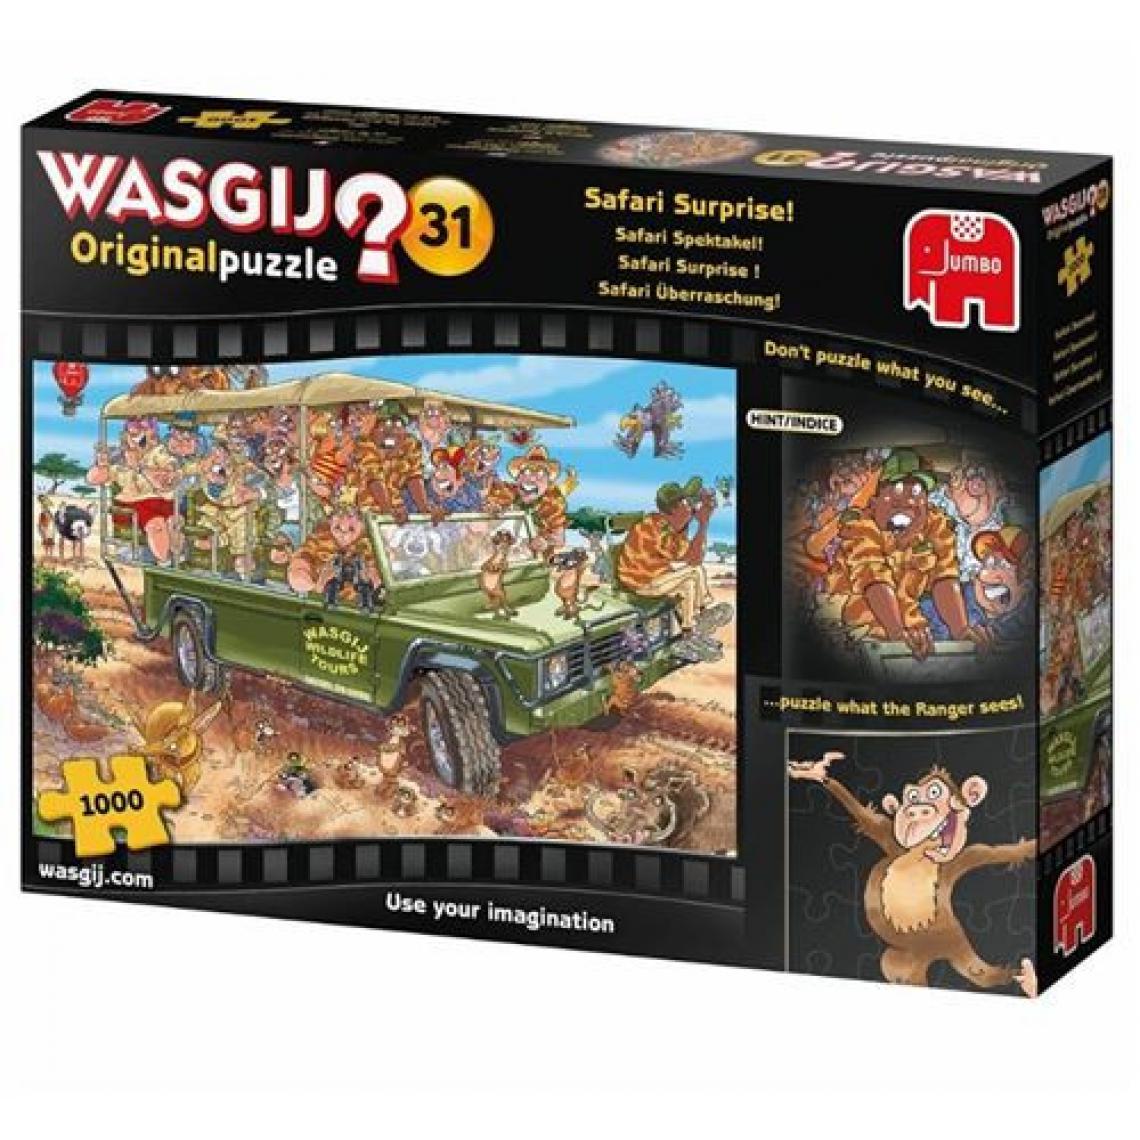 Diset - Puzzle 1000 pièces Diset Wasgij Original 31 Safari Surprise - Animaux